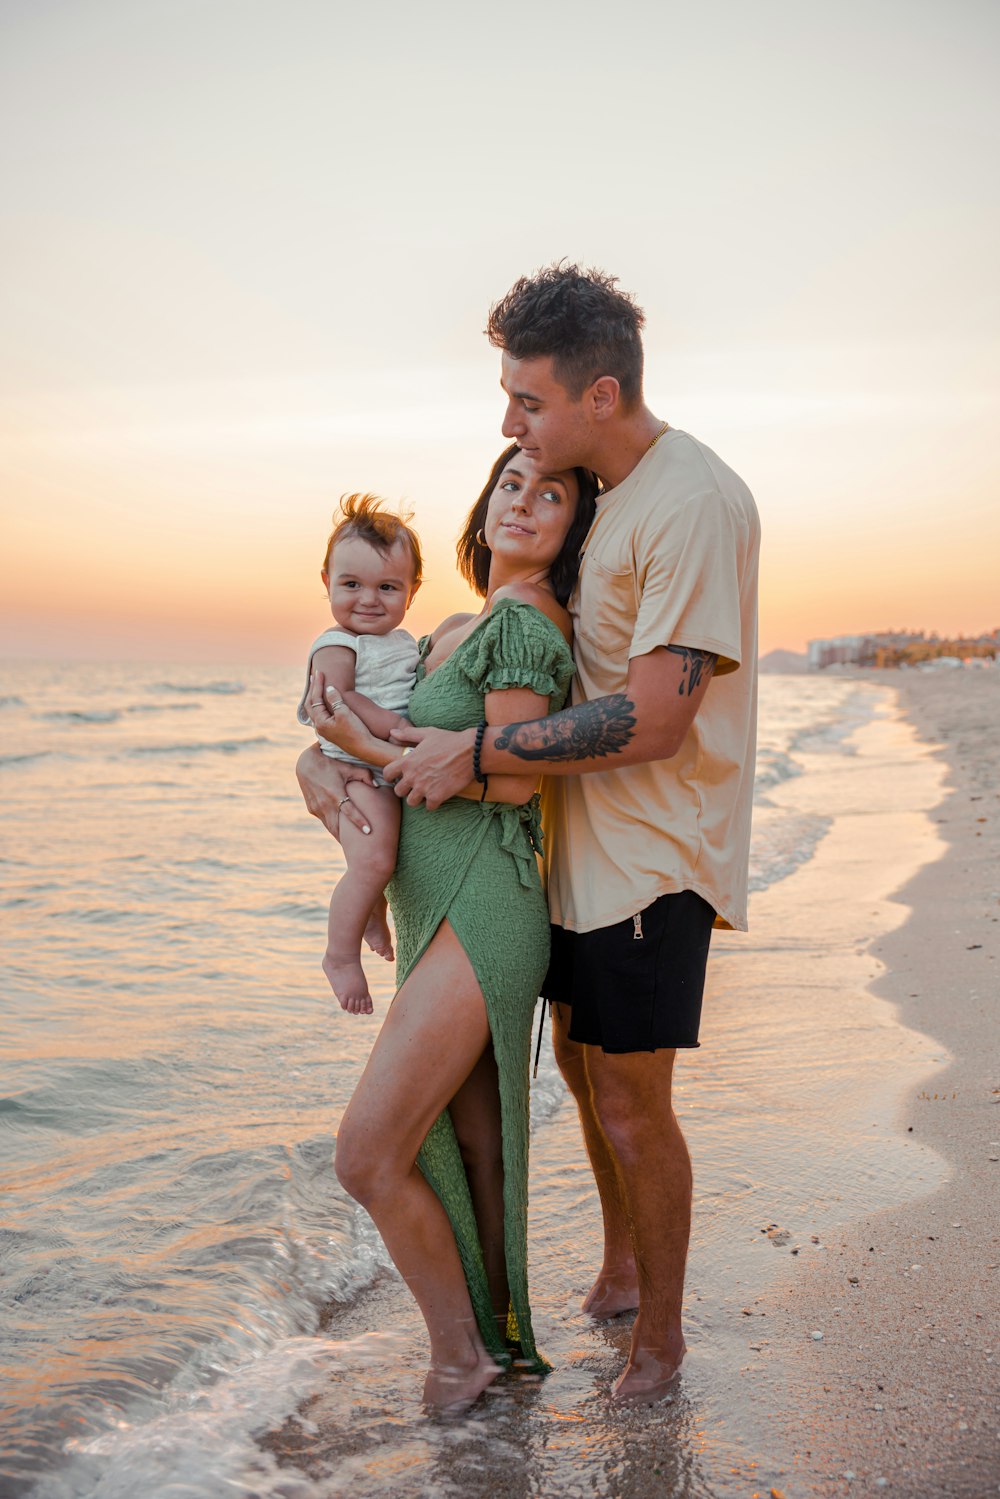 Ein Mann und eine Frau mit einem Baby am Strand